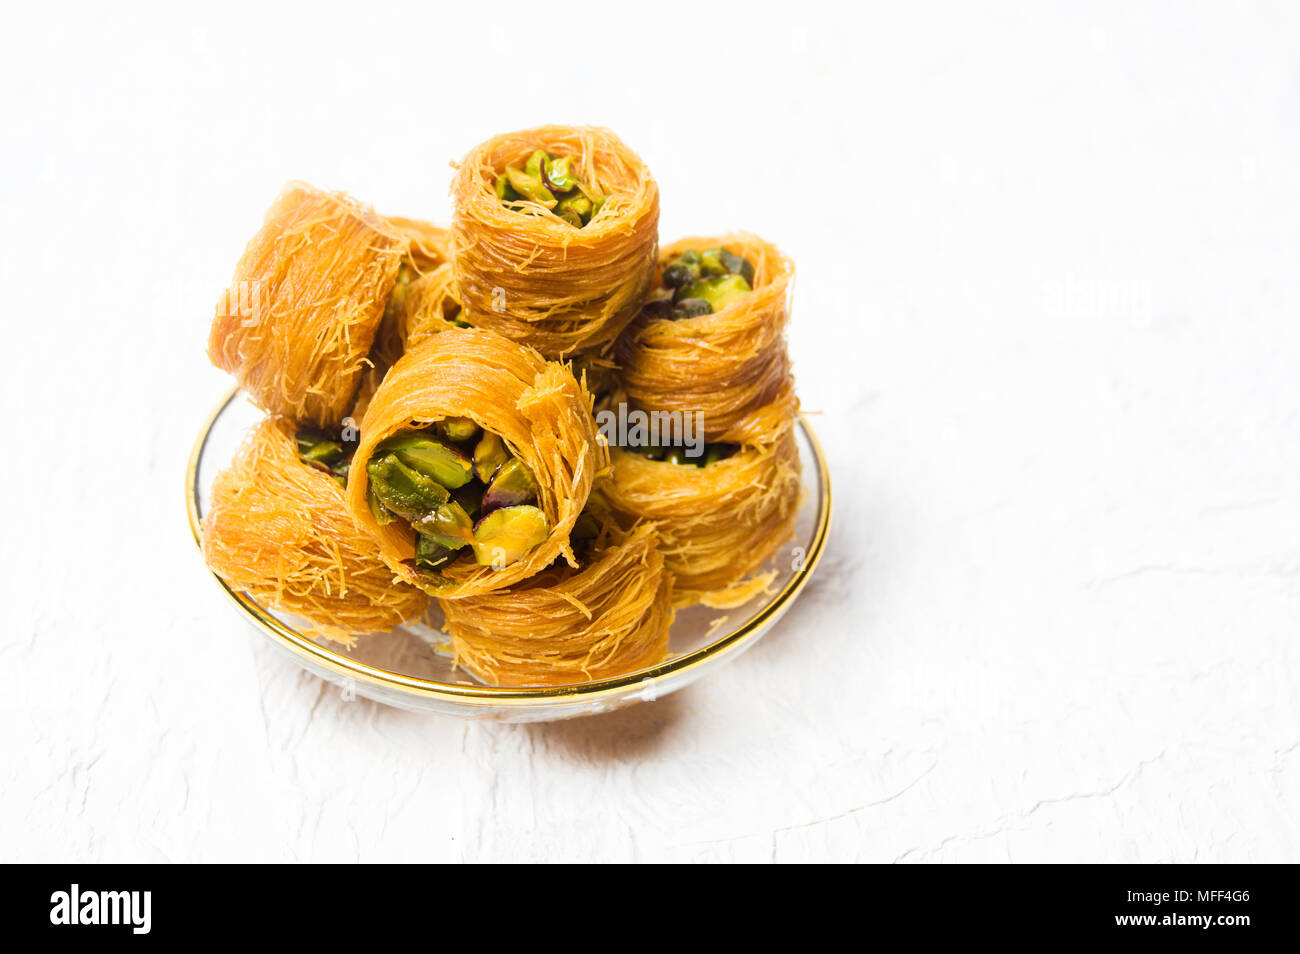 L'arabe dessert à la pistache isolated on white Banque D'Images